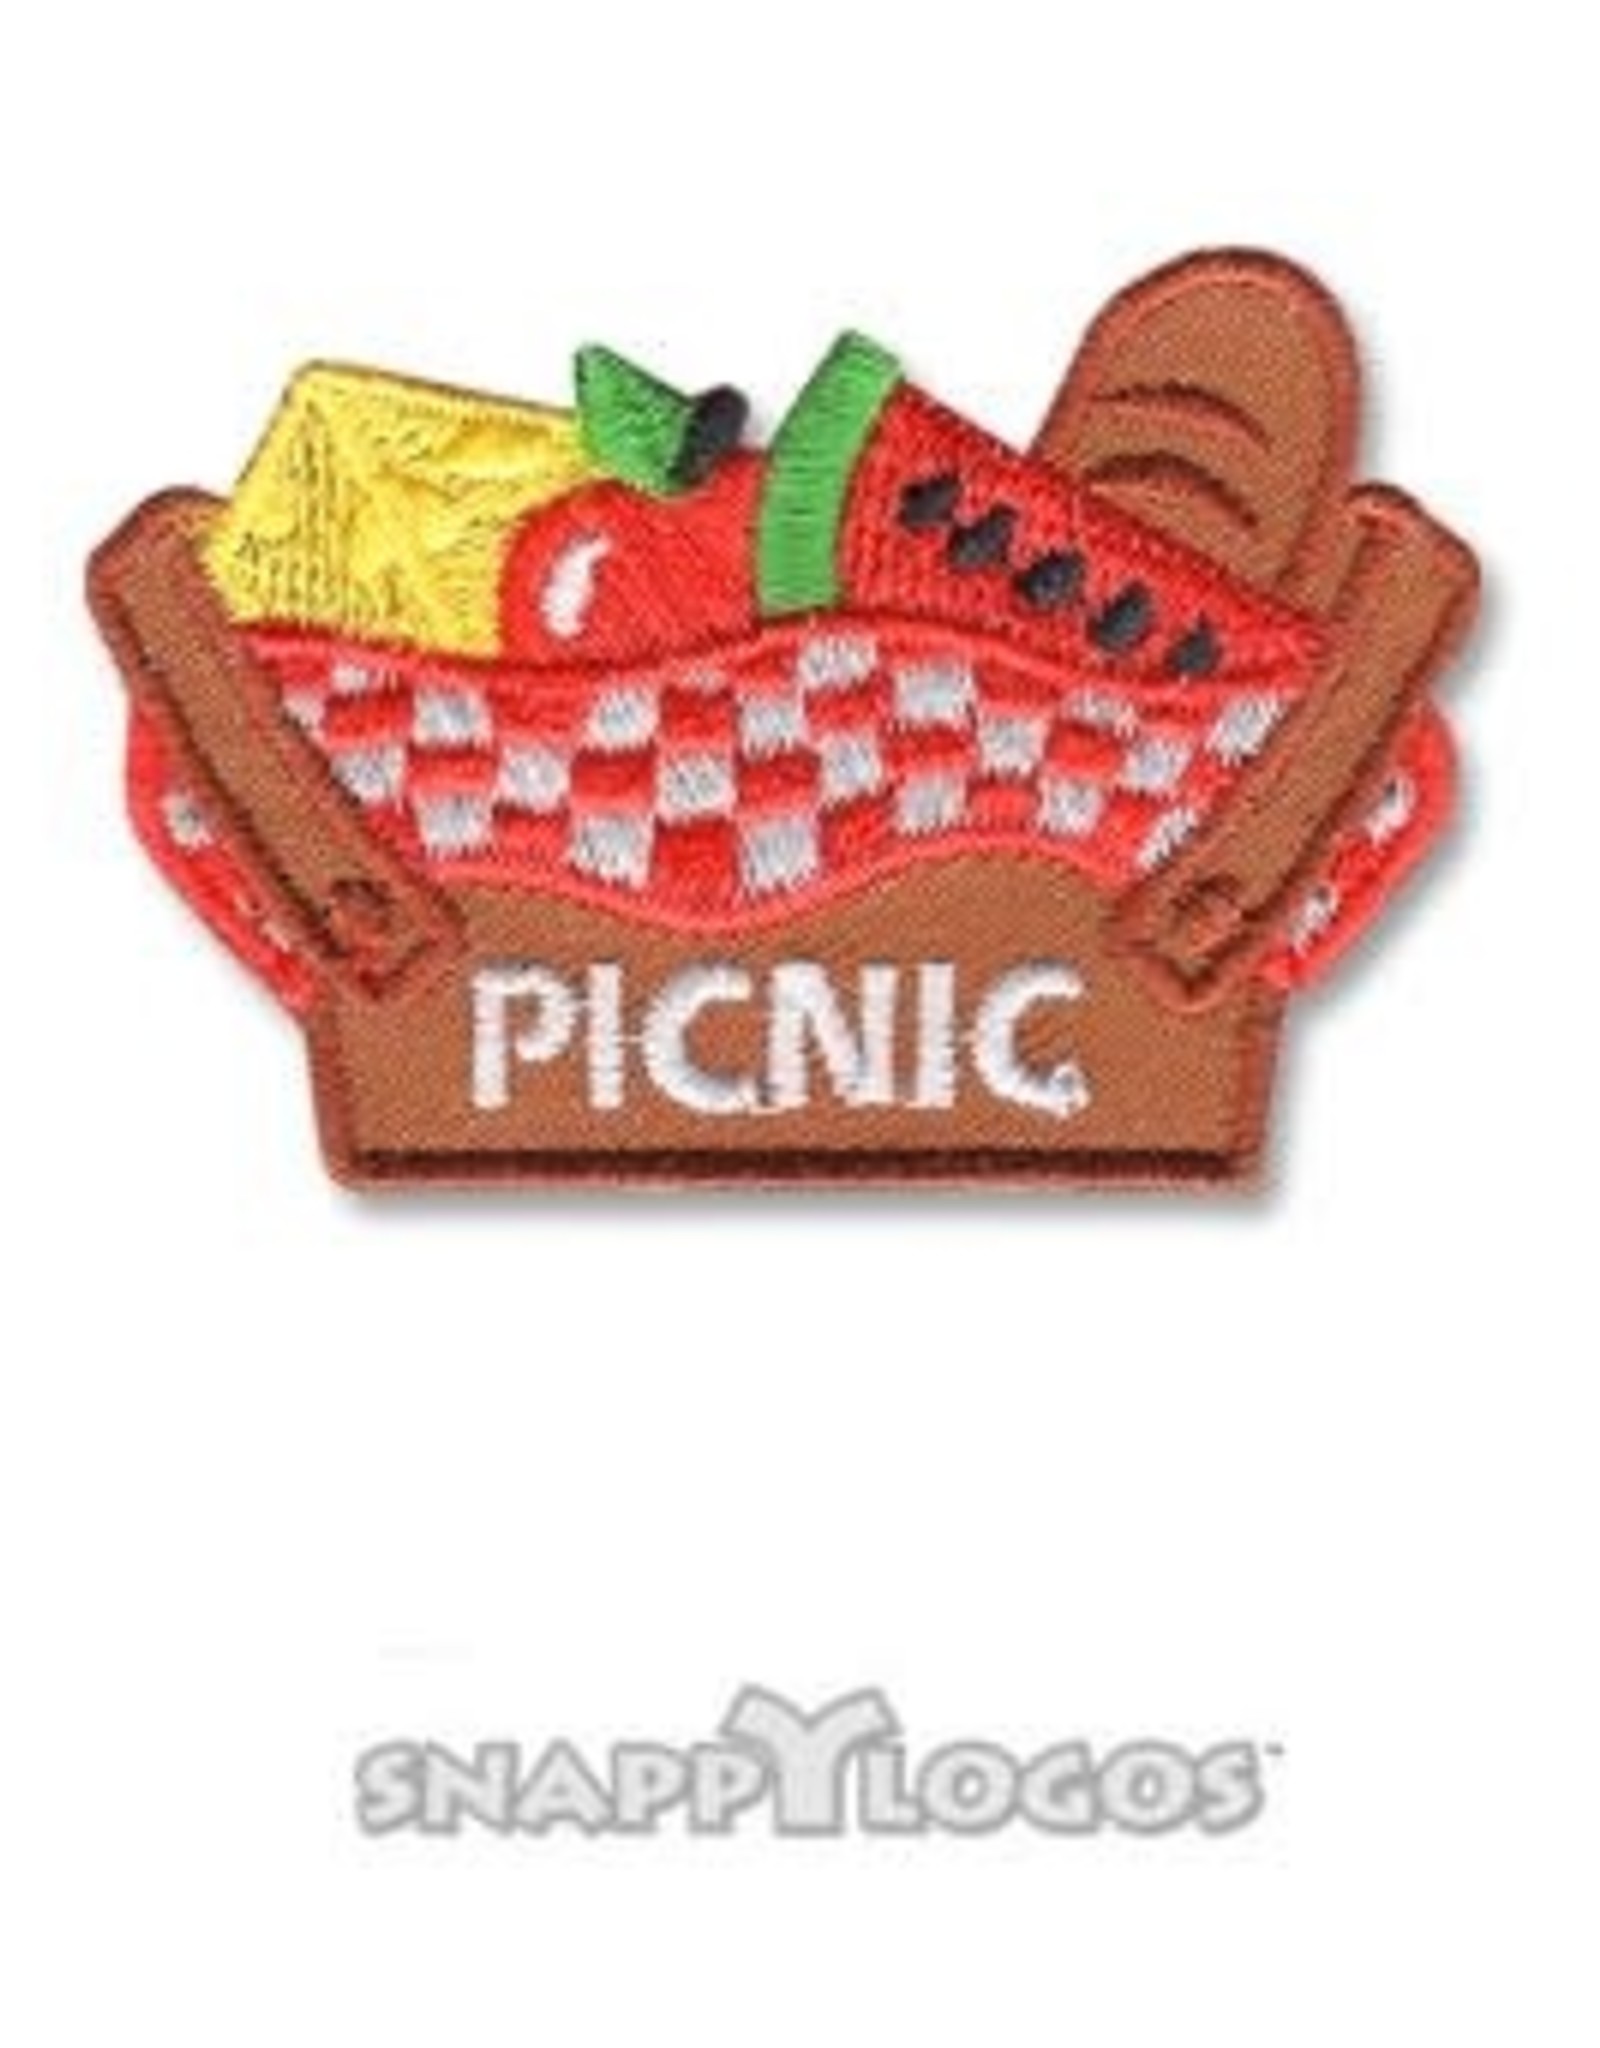 snappylogos Picnic w/ Basket Fun Patch (6631)